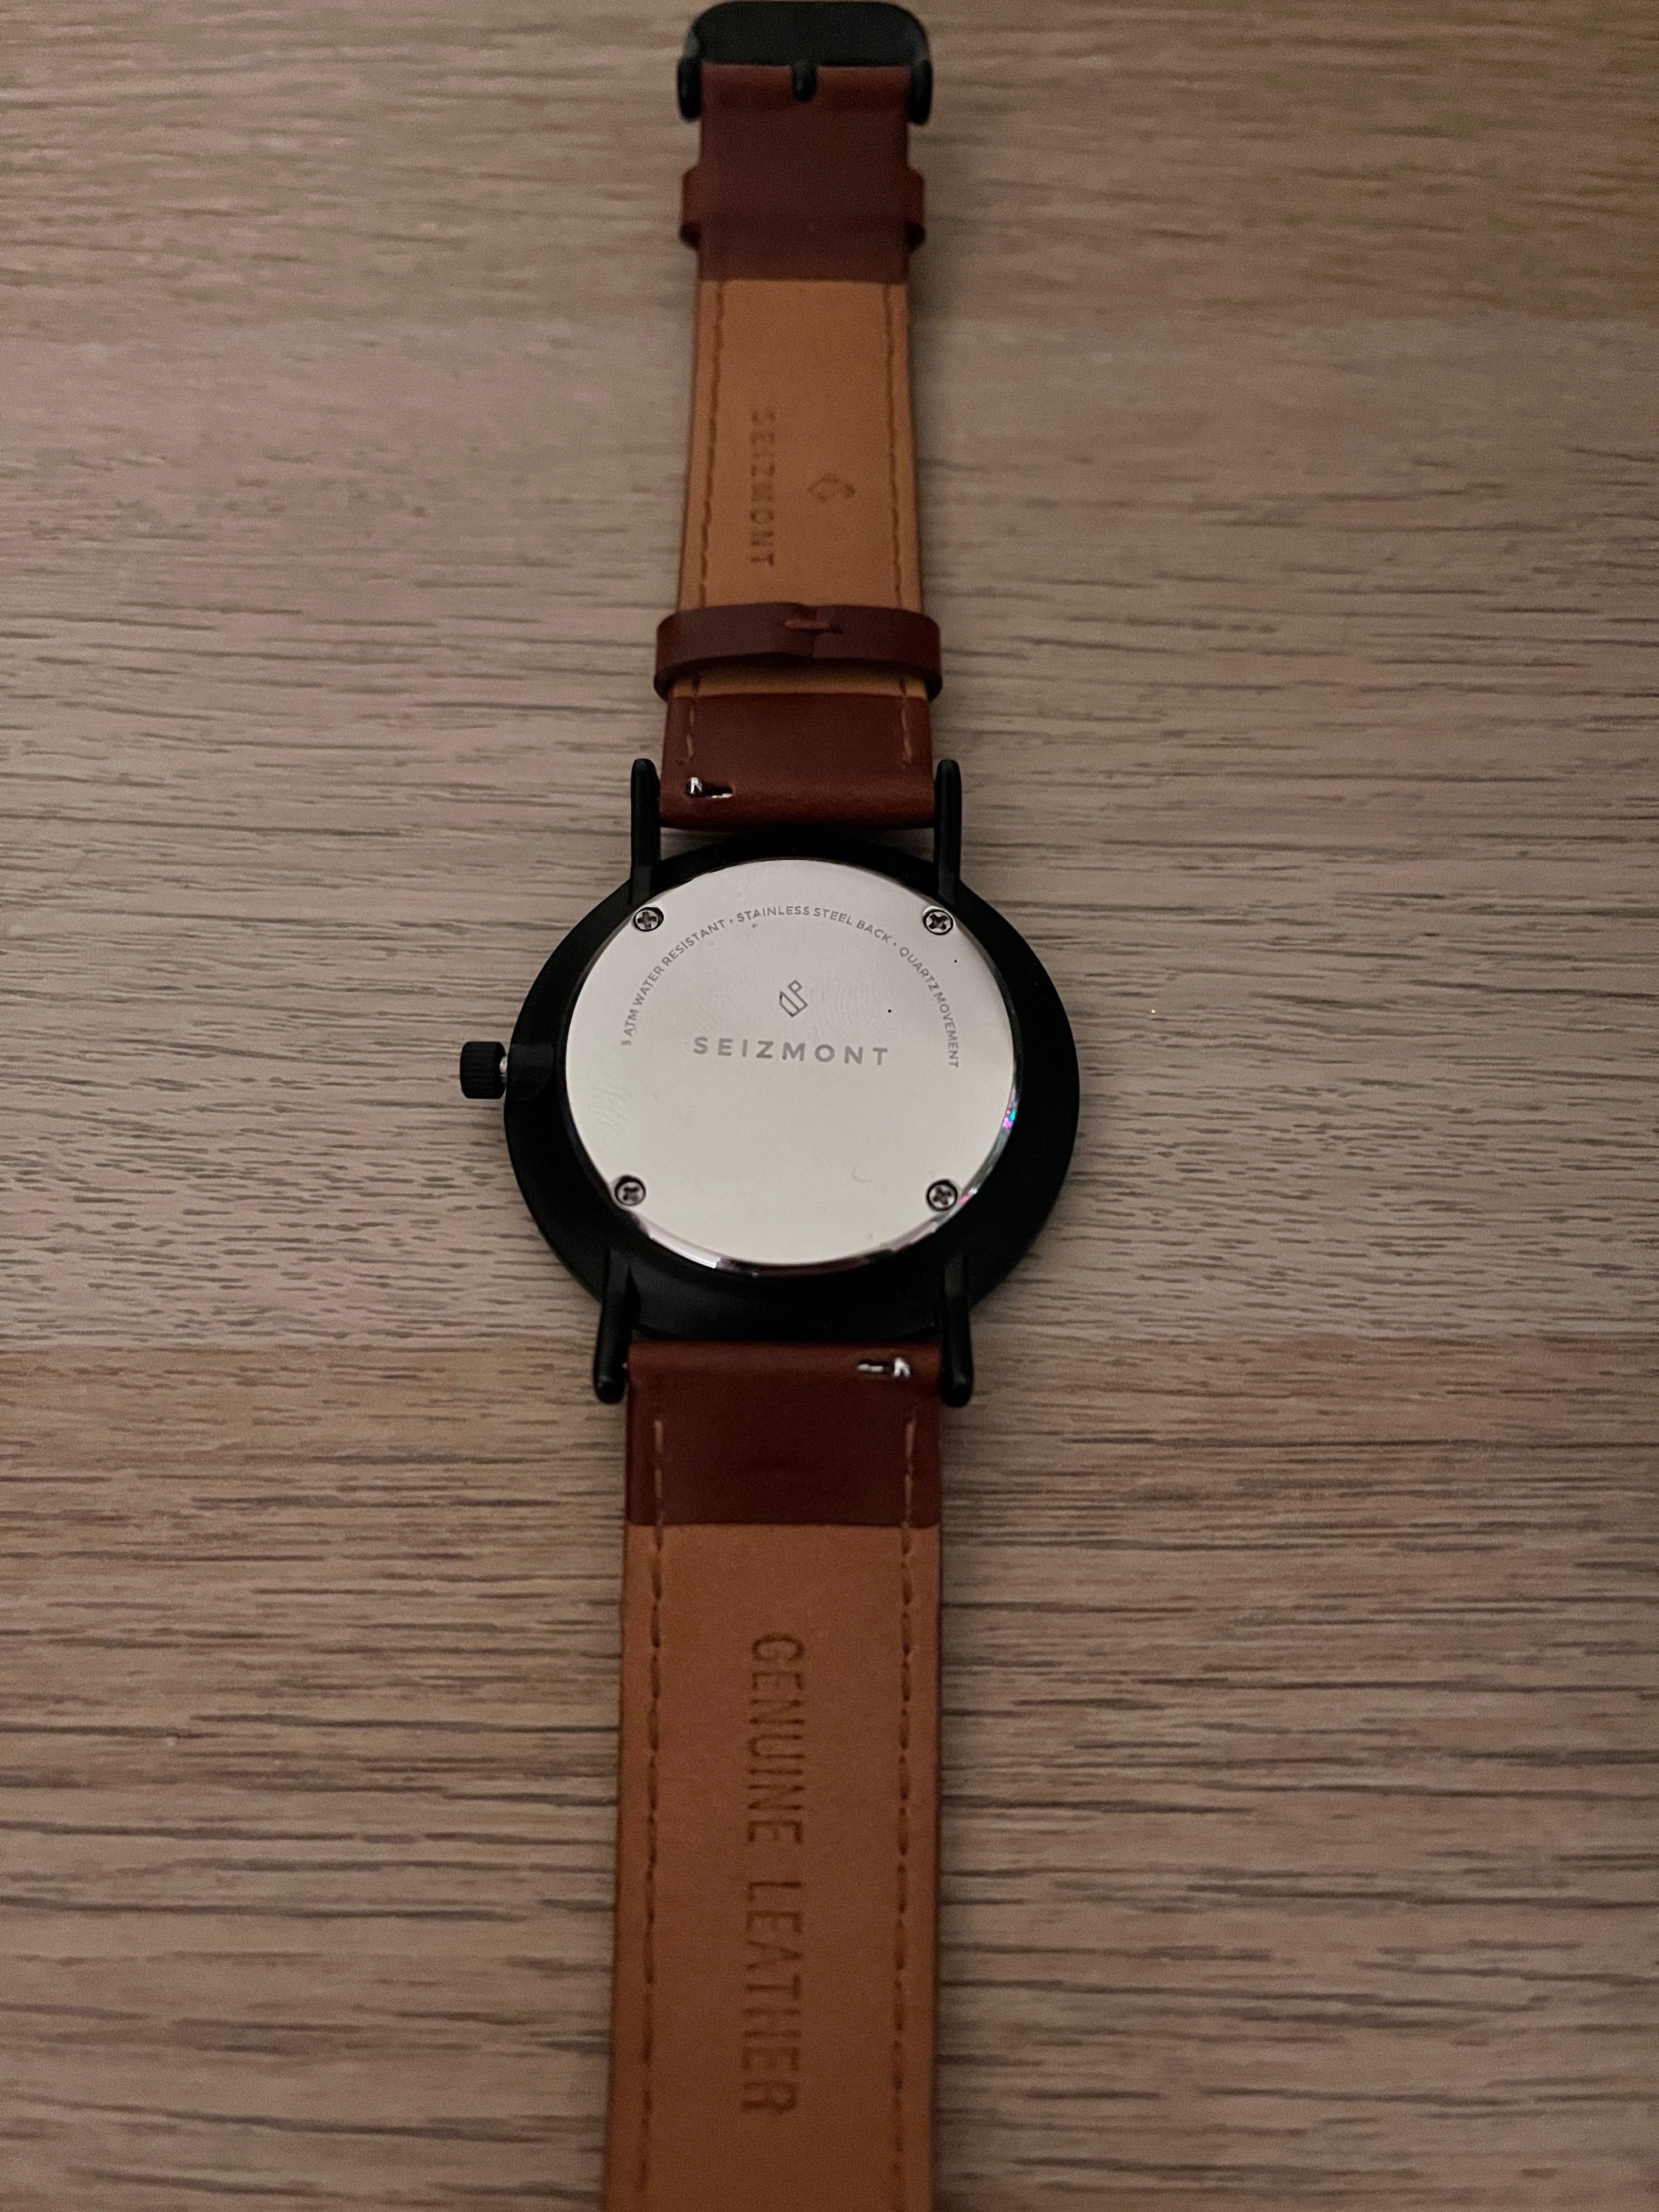 Relógio Seizmont Lucas Moment - classe com design nórdico